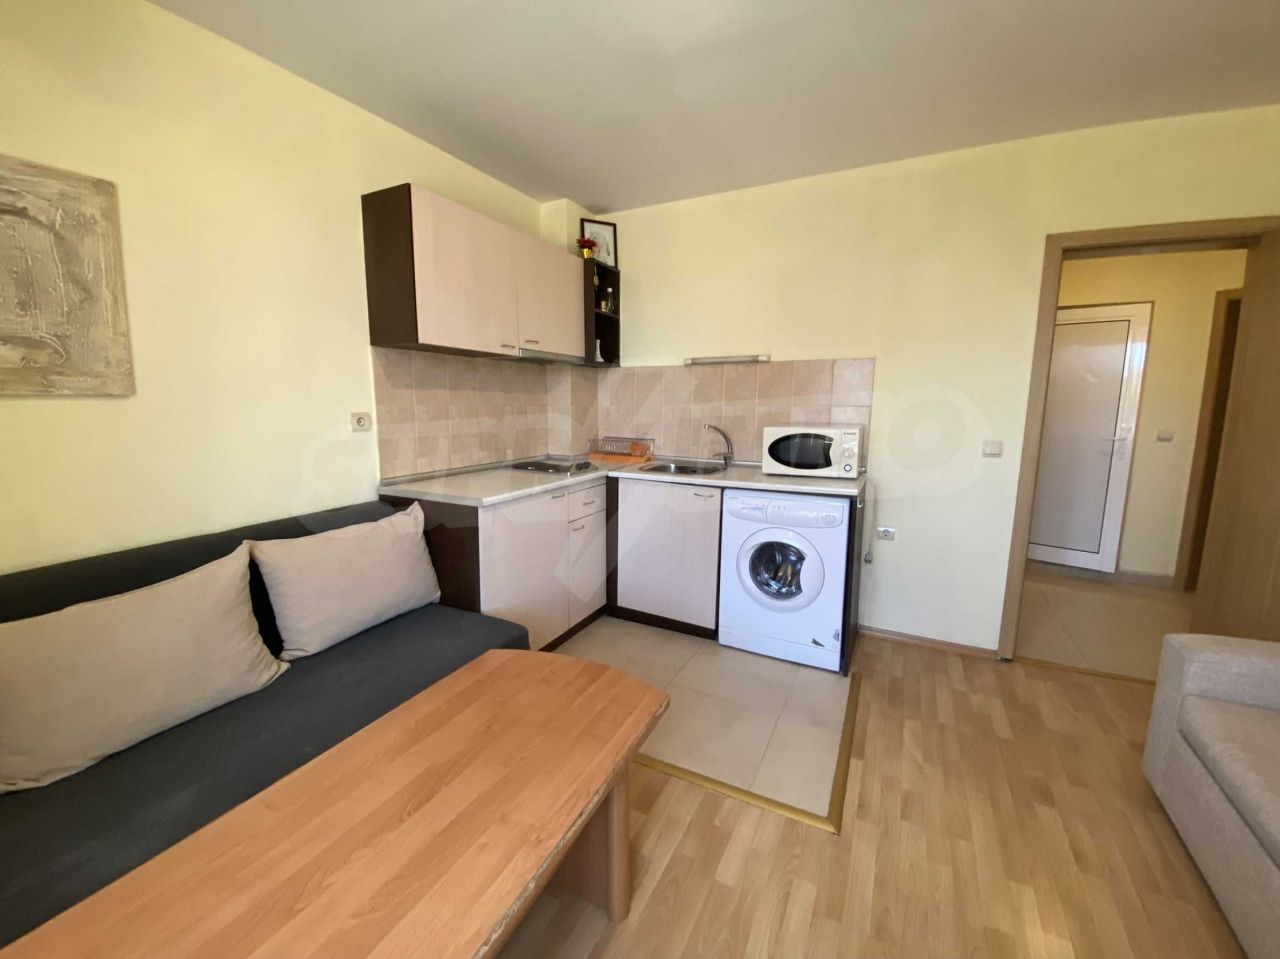 Apartment in Bansko, Bulgarien, 61.5 m2 - Foto 1